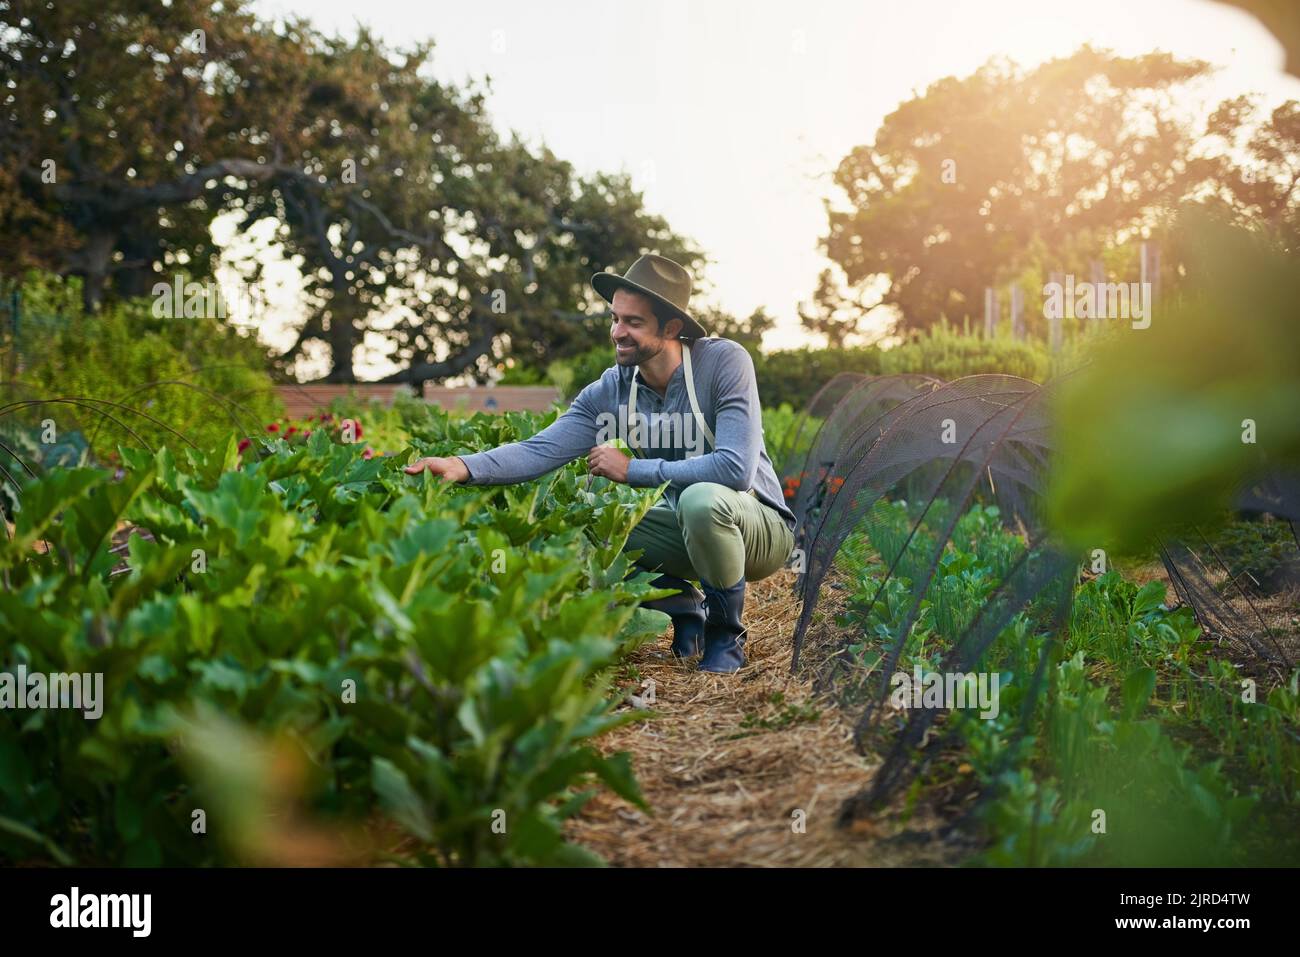 Prospera mis bellezas. Un hombre joven que cuida de los cultivos en una granja. Foto de stock